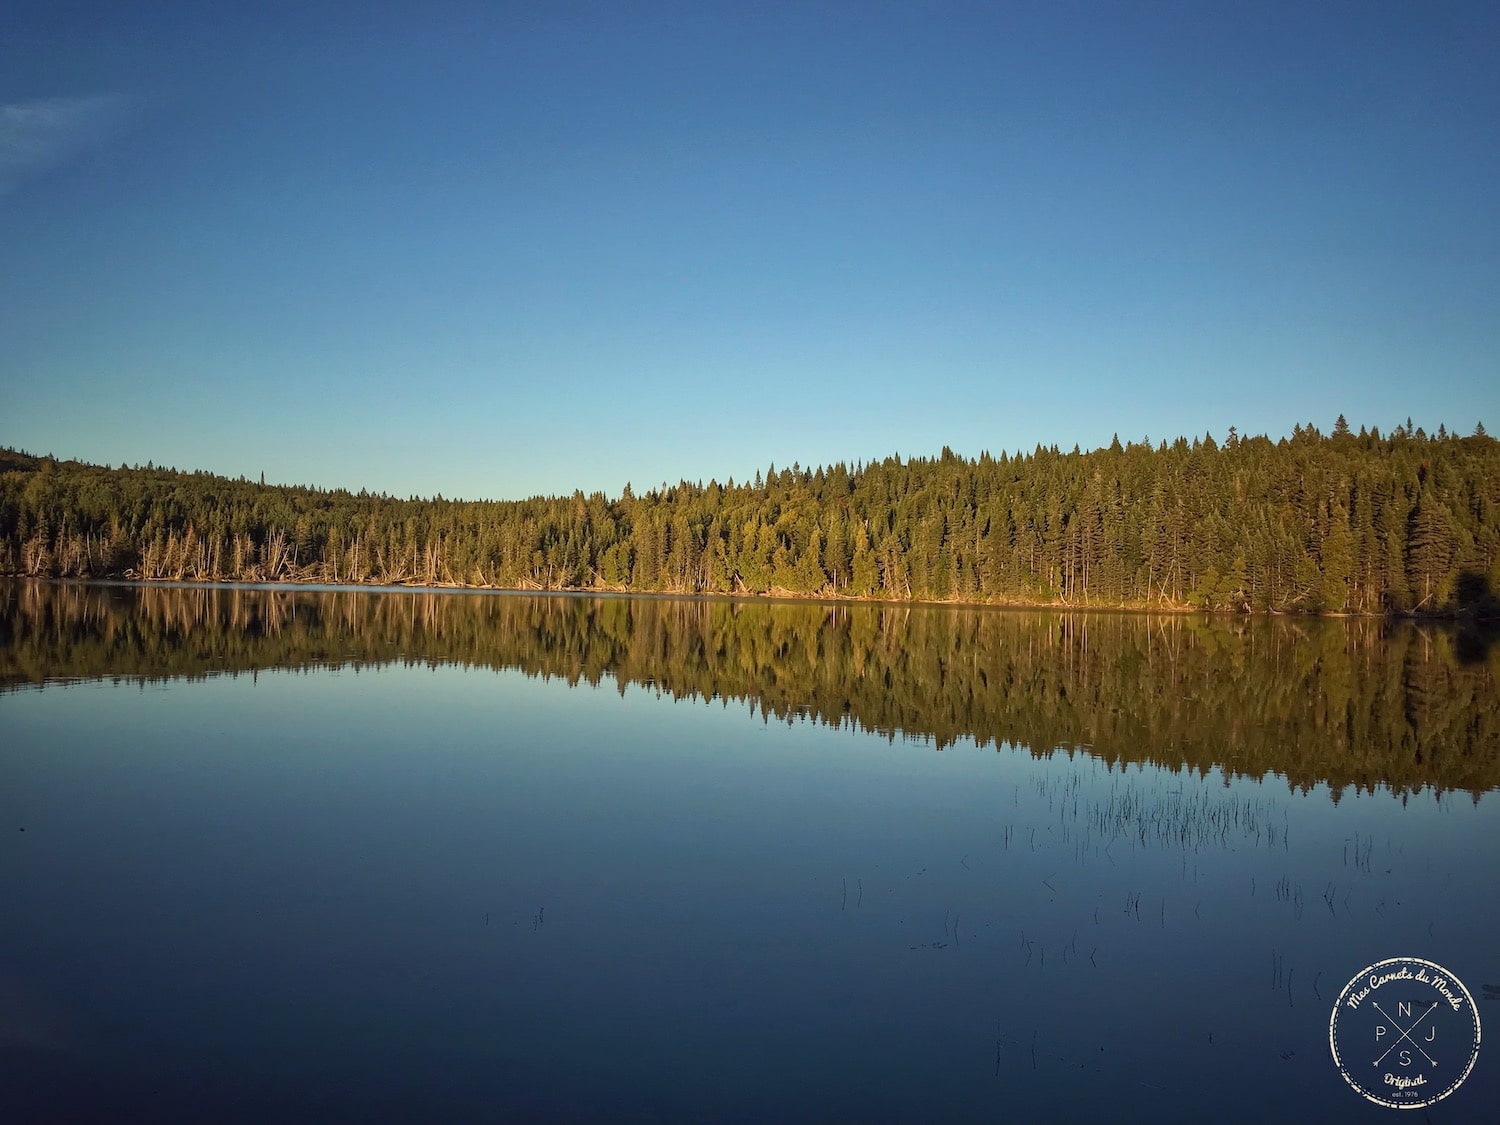 Reflets de la forêt sur le lac au Canada, début de la période de chasse